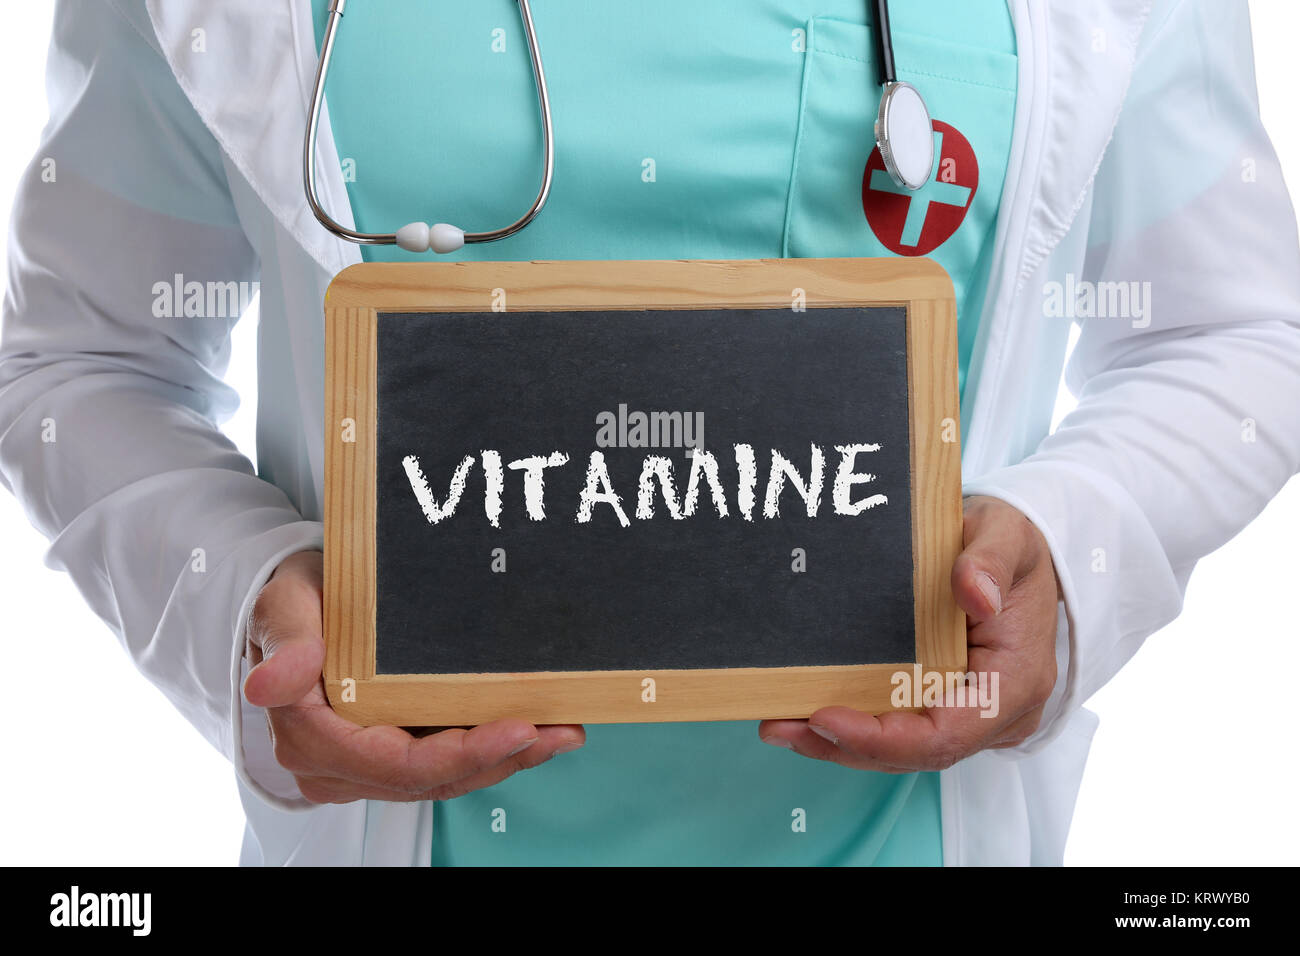 Vitamine Vitamin Gesundheit gesunde Ernährung Doktor Arzt mit Schild Stock Photo